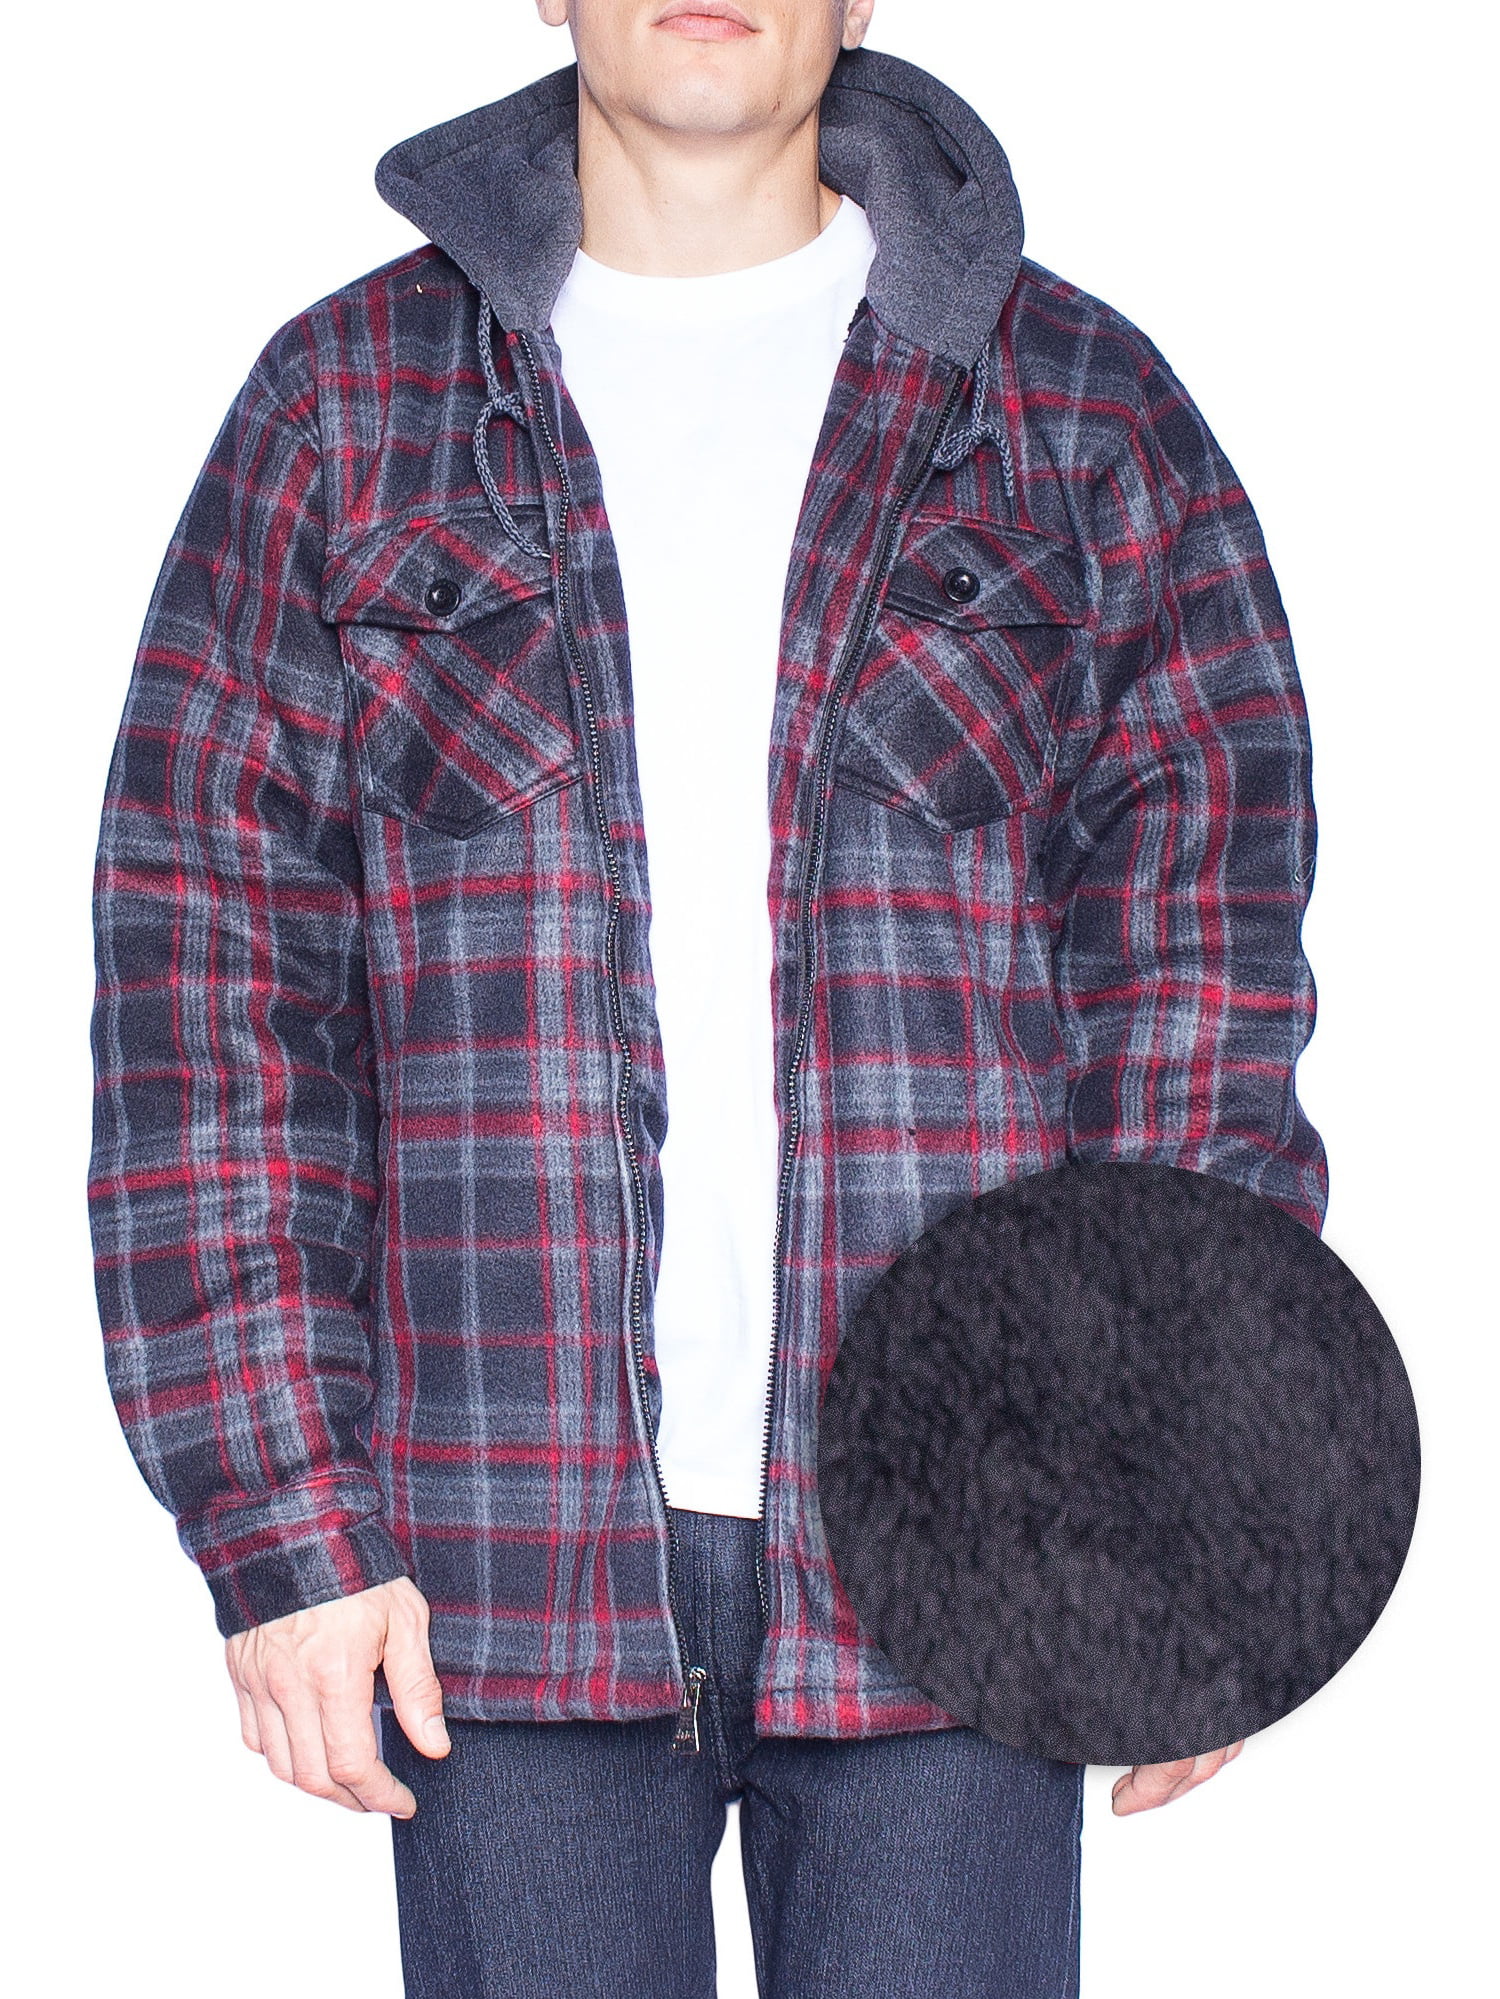 Walnut Creek Outdoors - Hoodie Flannel Fleece Jacket For Men Zip Up Big ...